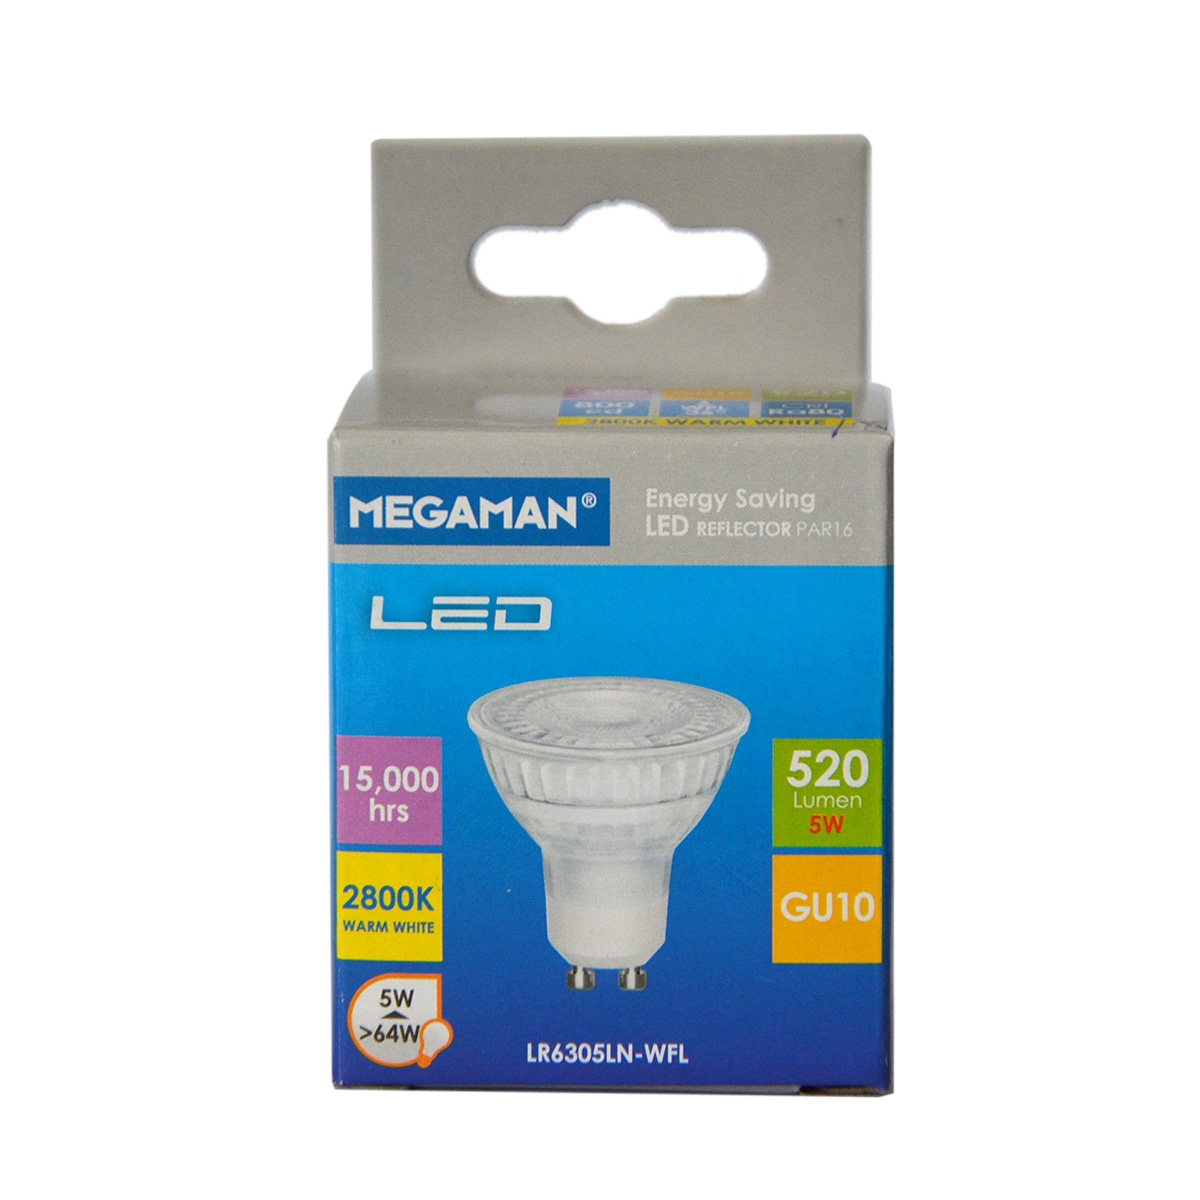 Megaman GU10 LED Bulb LR6305LN 5W 2800K - Warm White